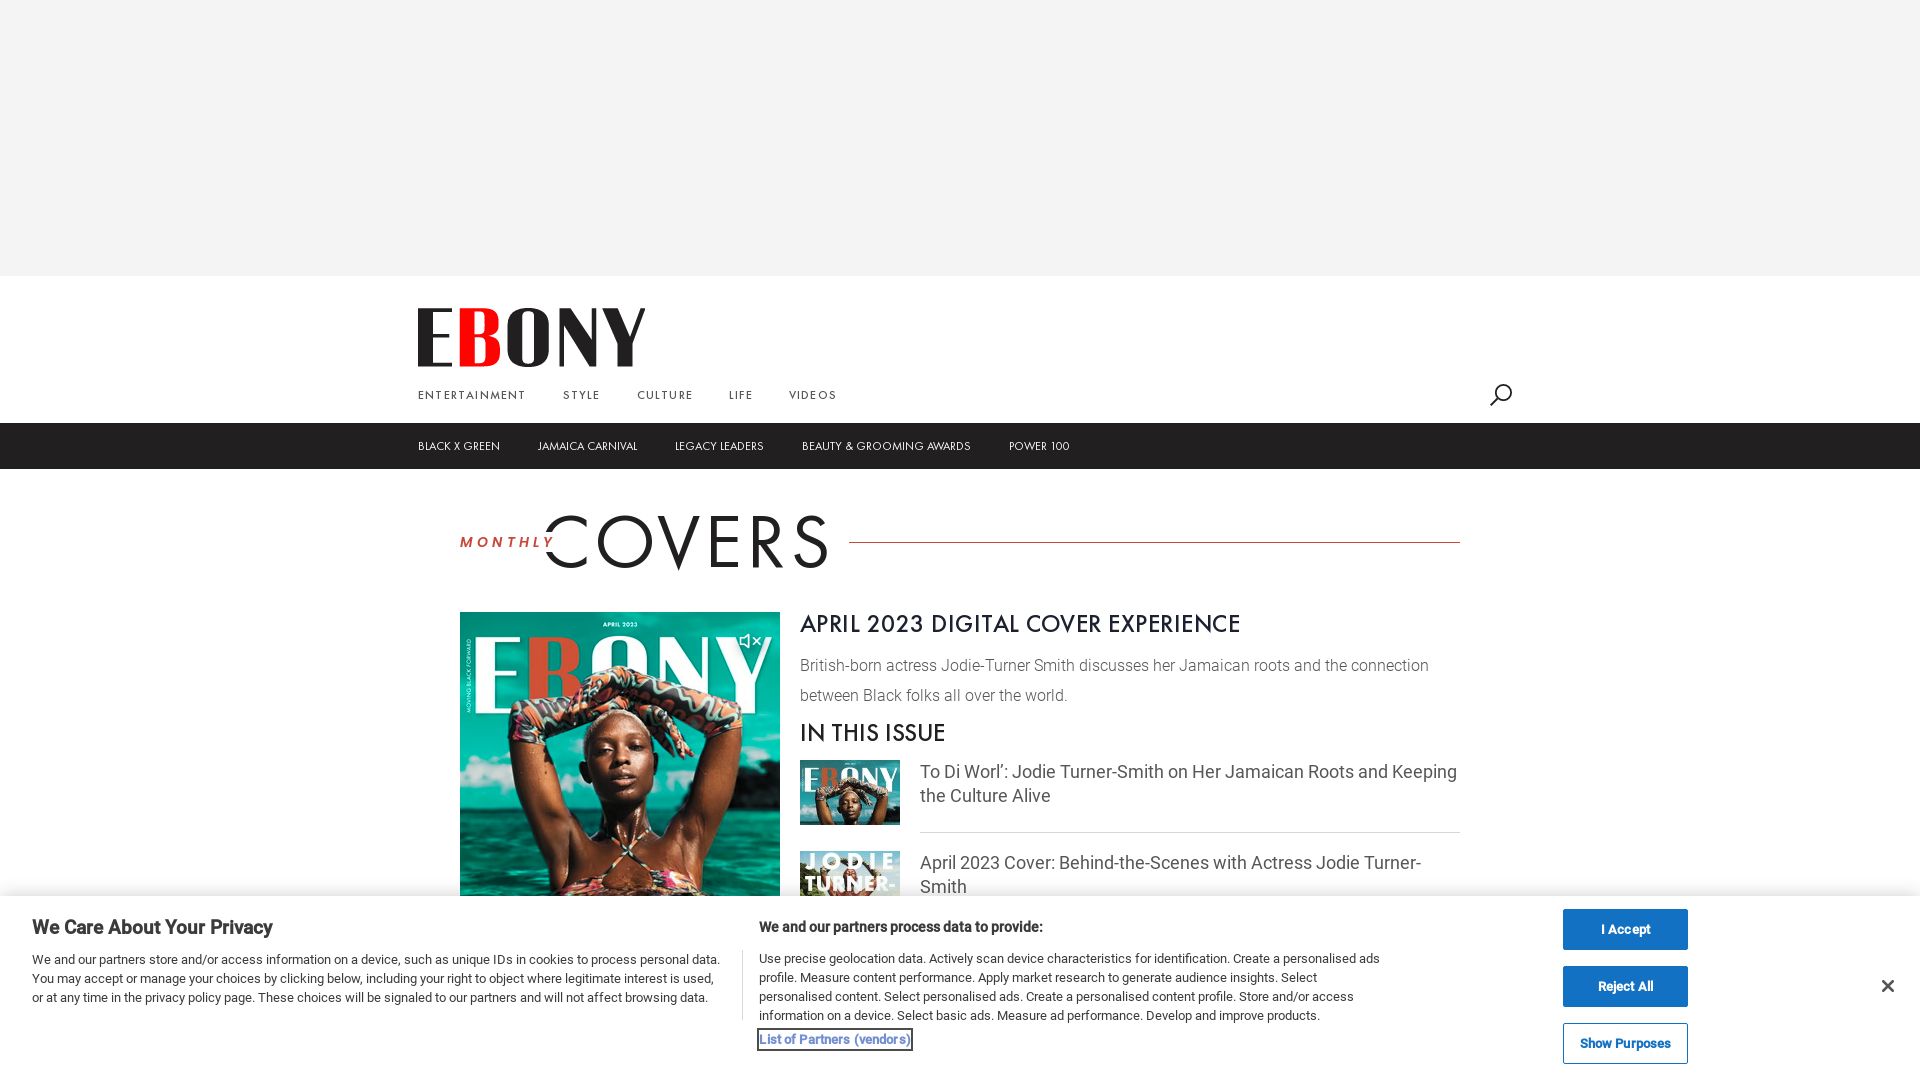 État du site web ebony.com est   EN LIGNE